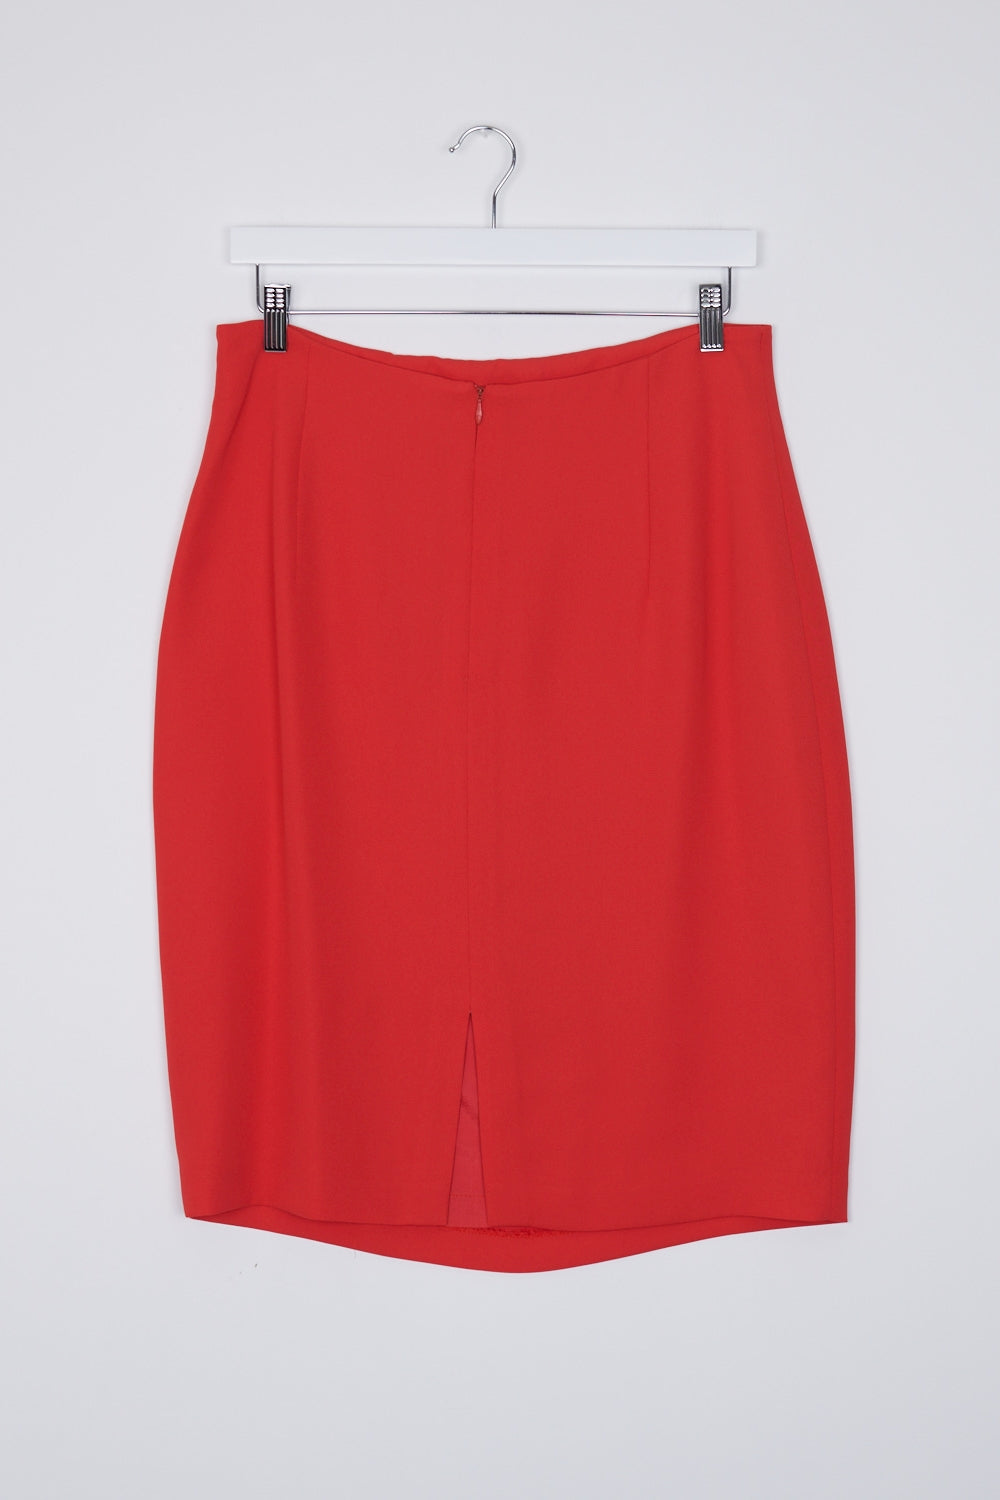 Anthea Crawford Orange Skirt 16